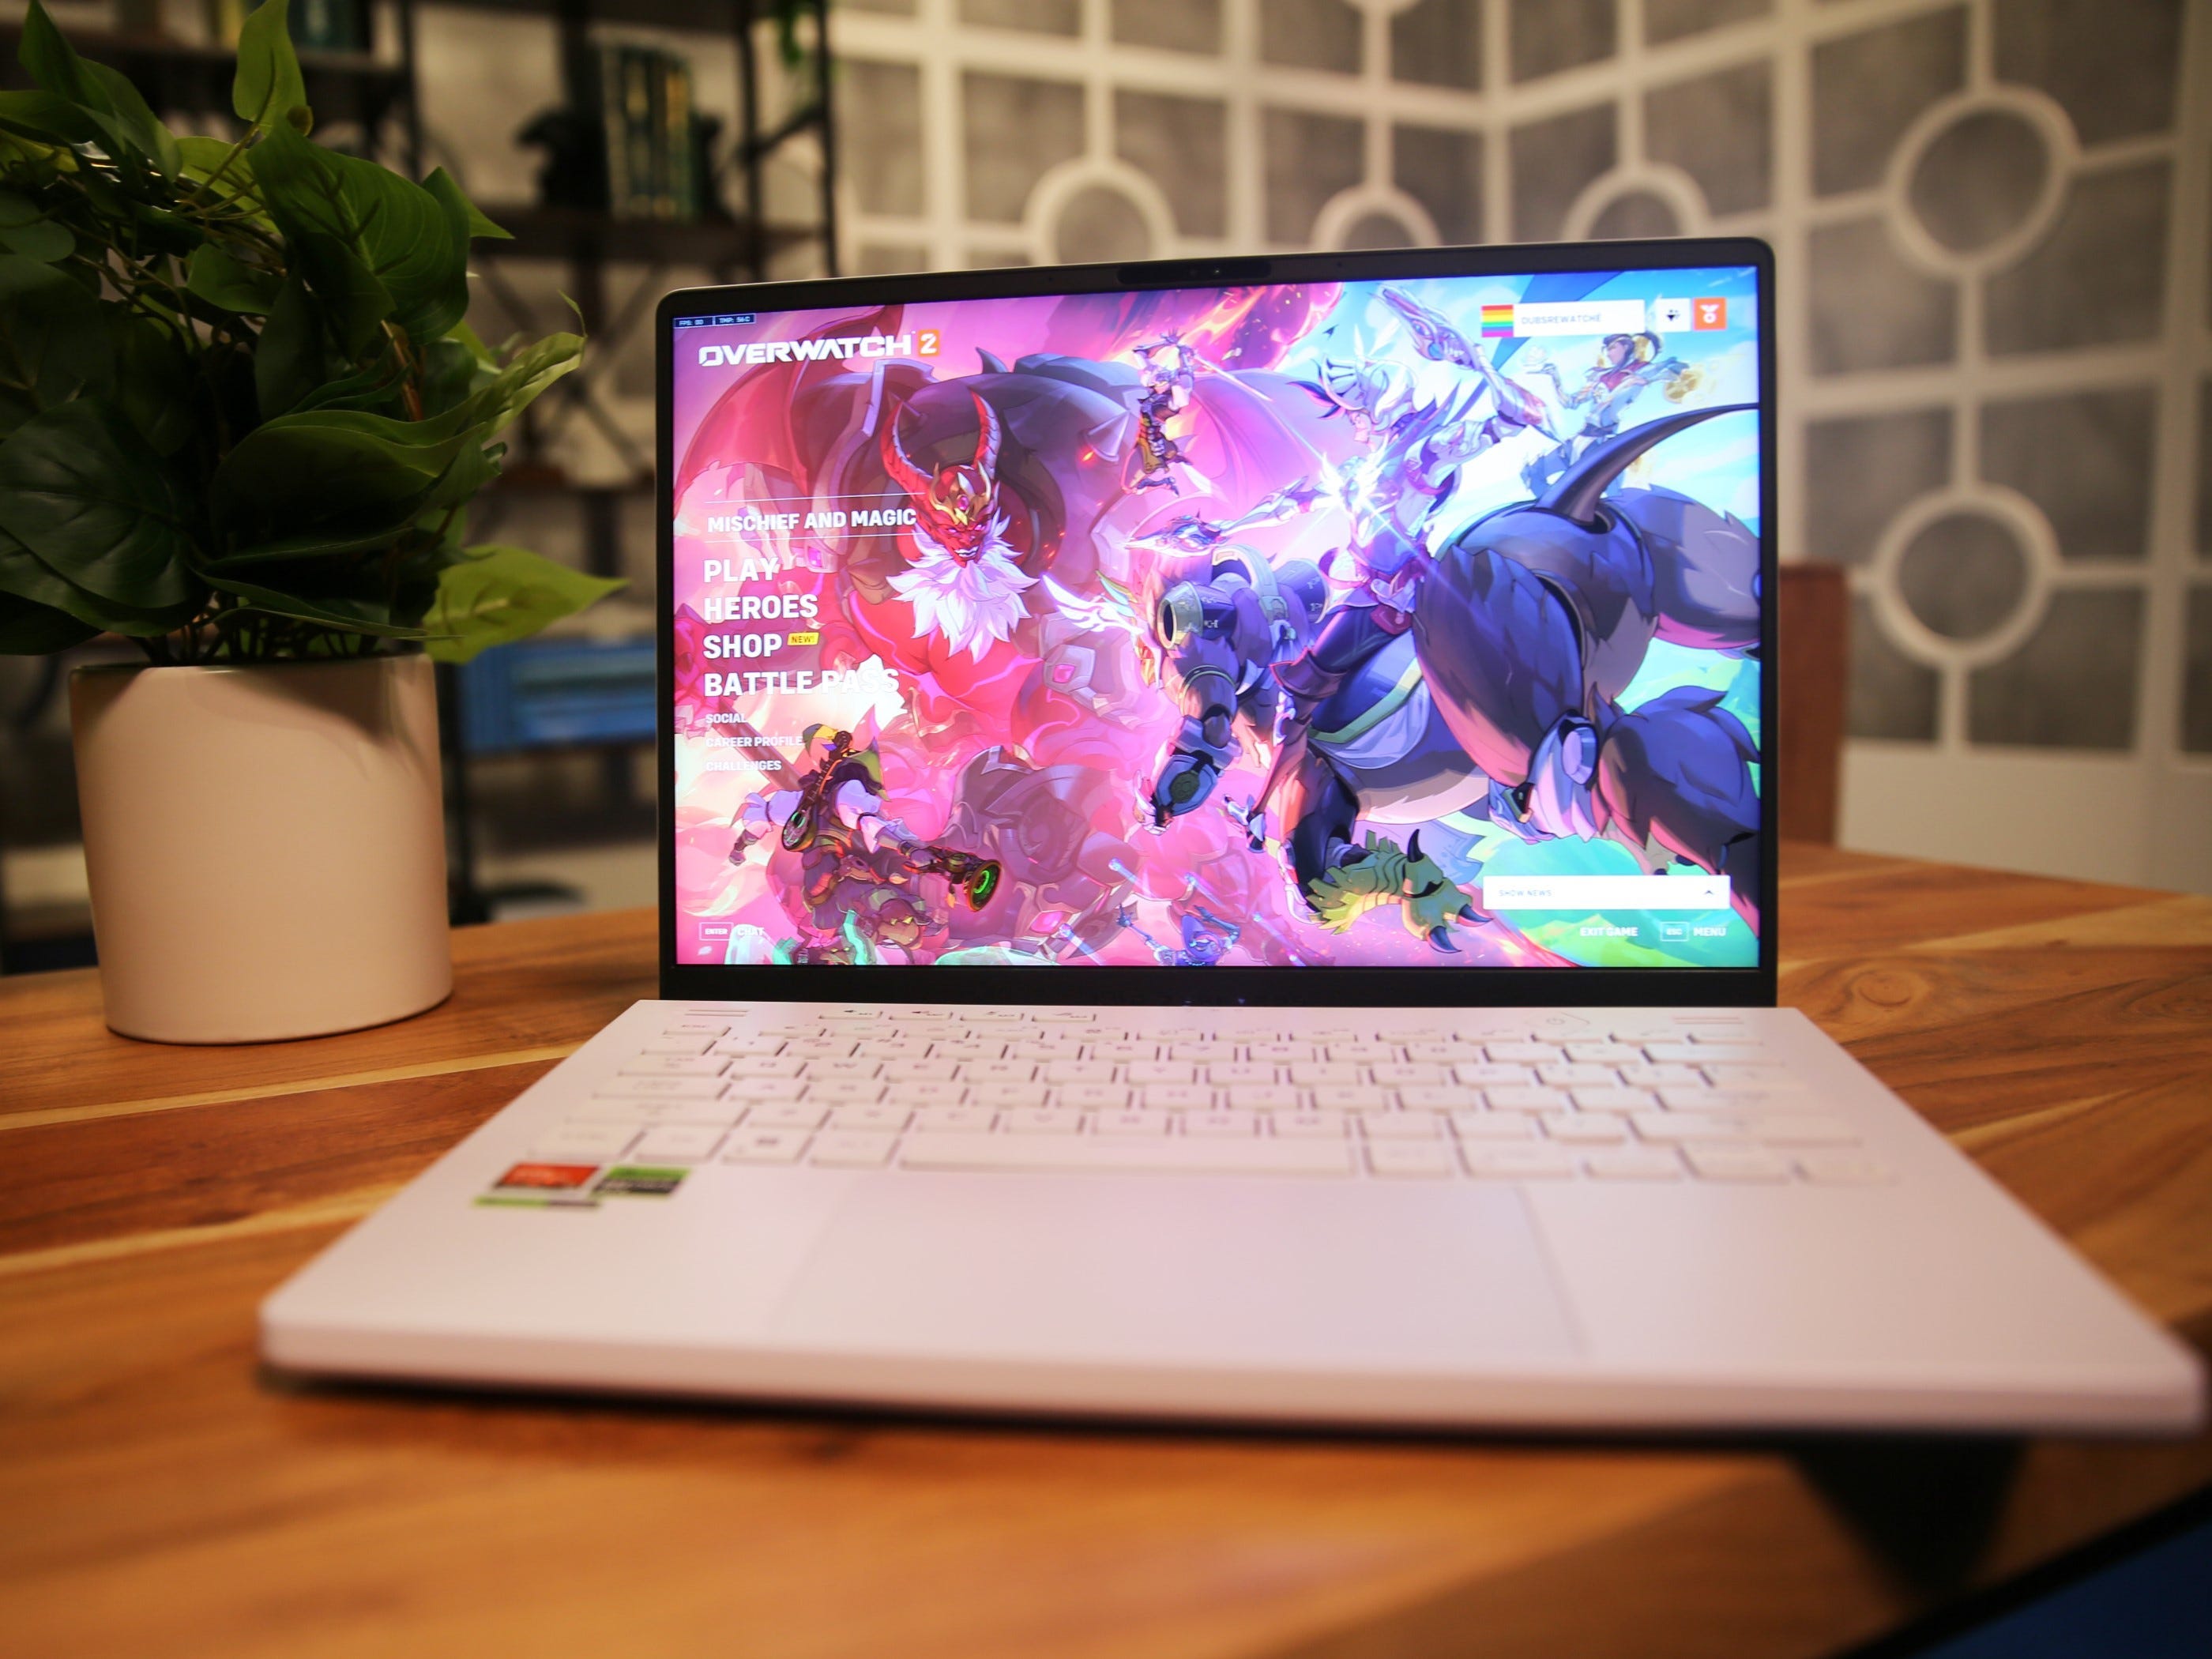 Ein Asus ROG Zephyrus G14 Laptop, der den Startbildschirm des Spiels Overwatch 2 anzeigt, sitzt auf einem Tisch neben einer Pflanze.